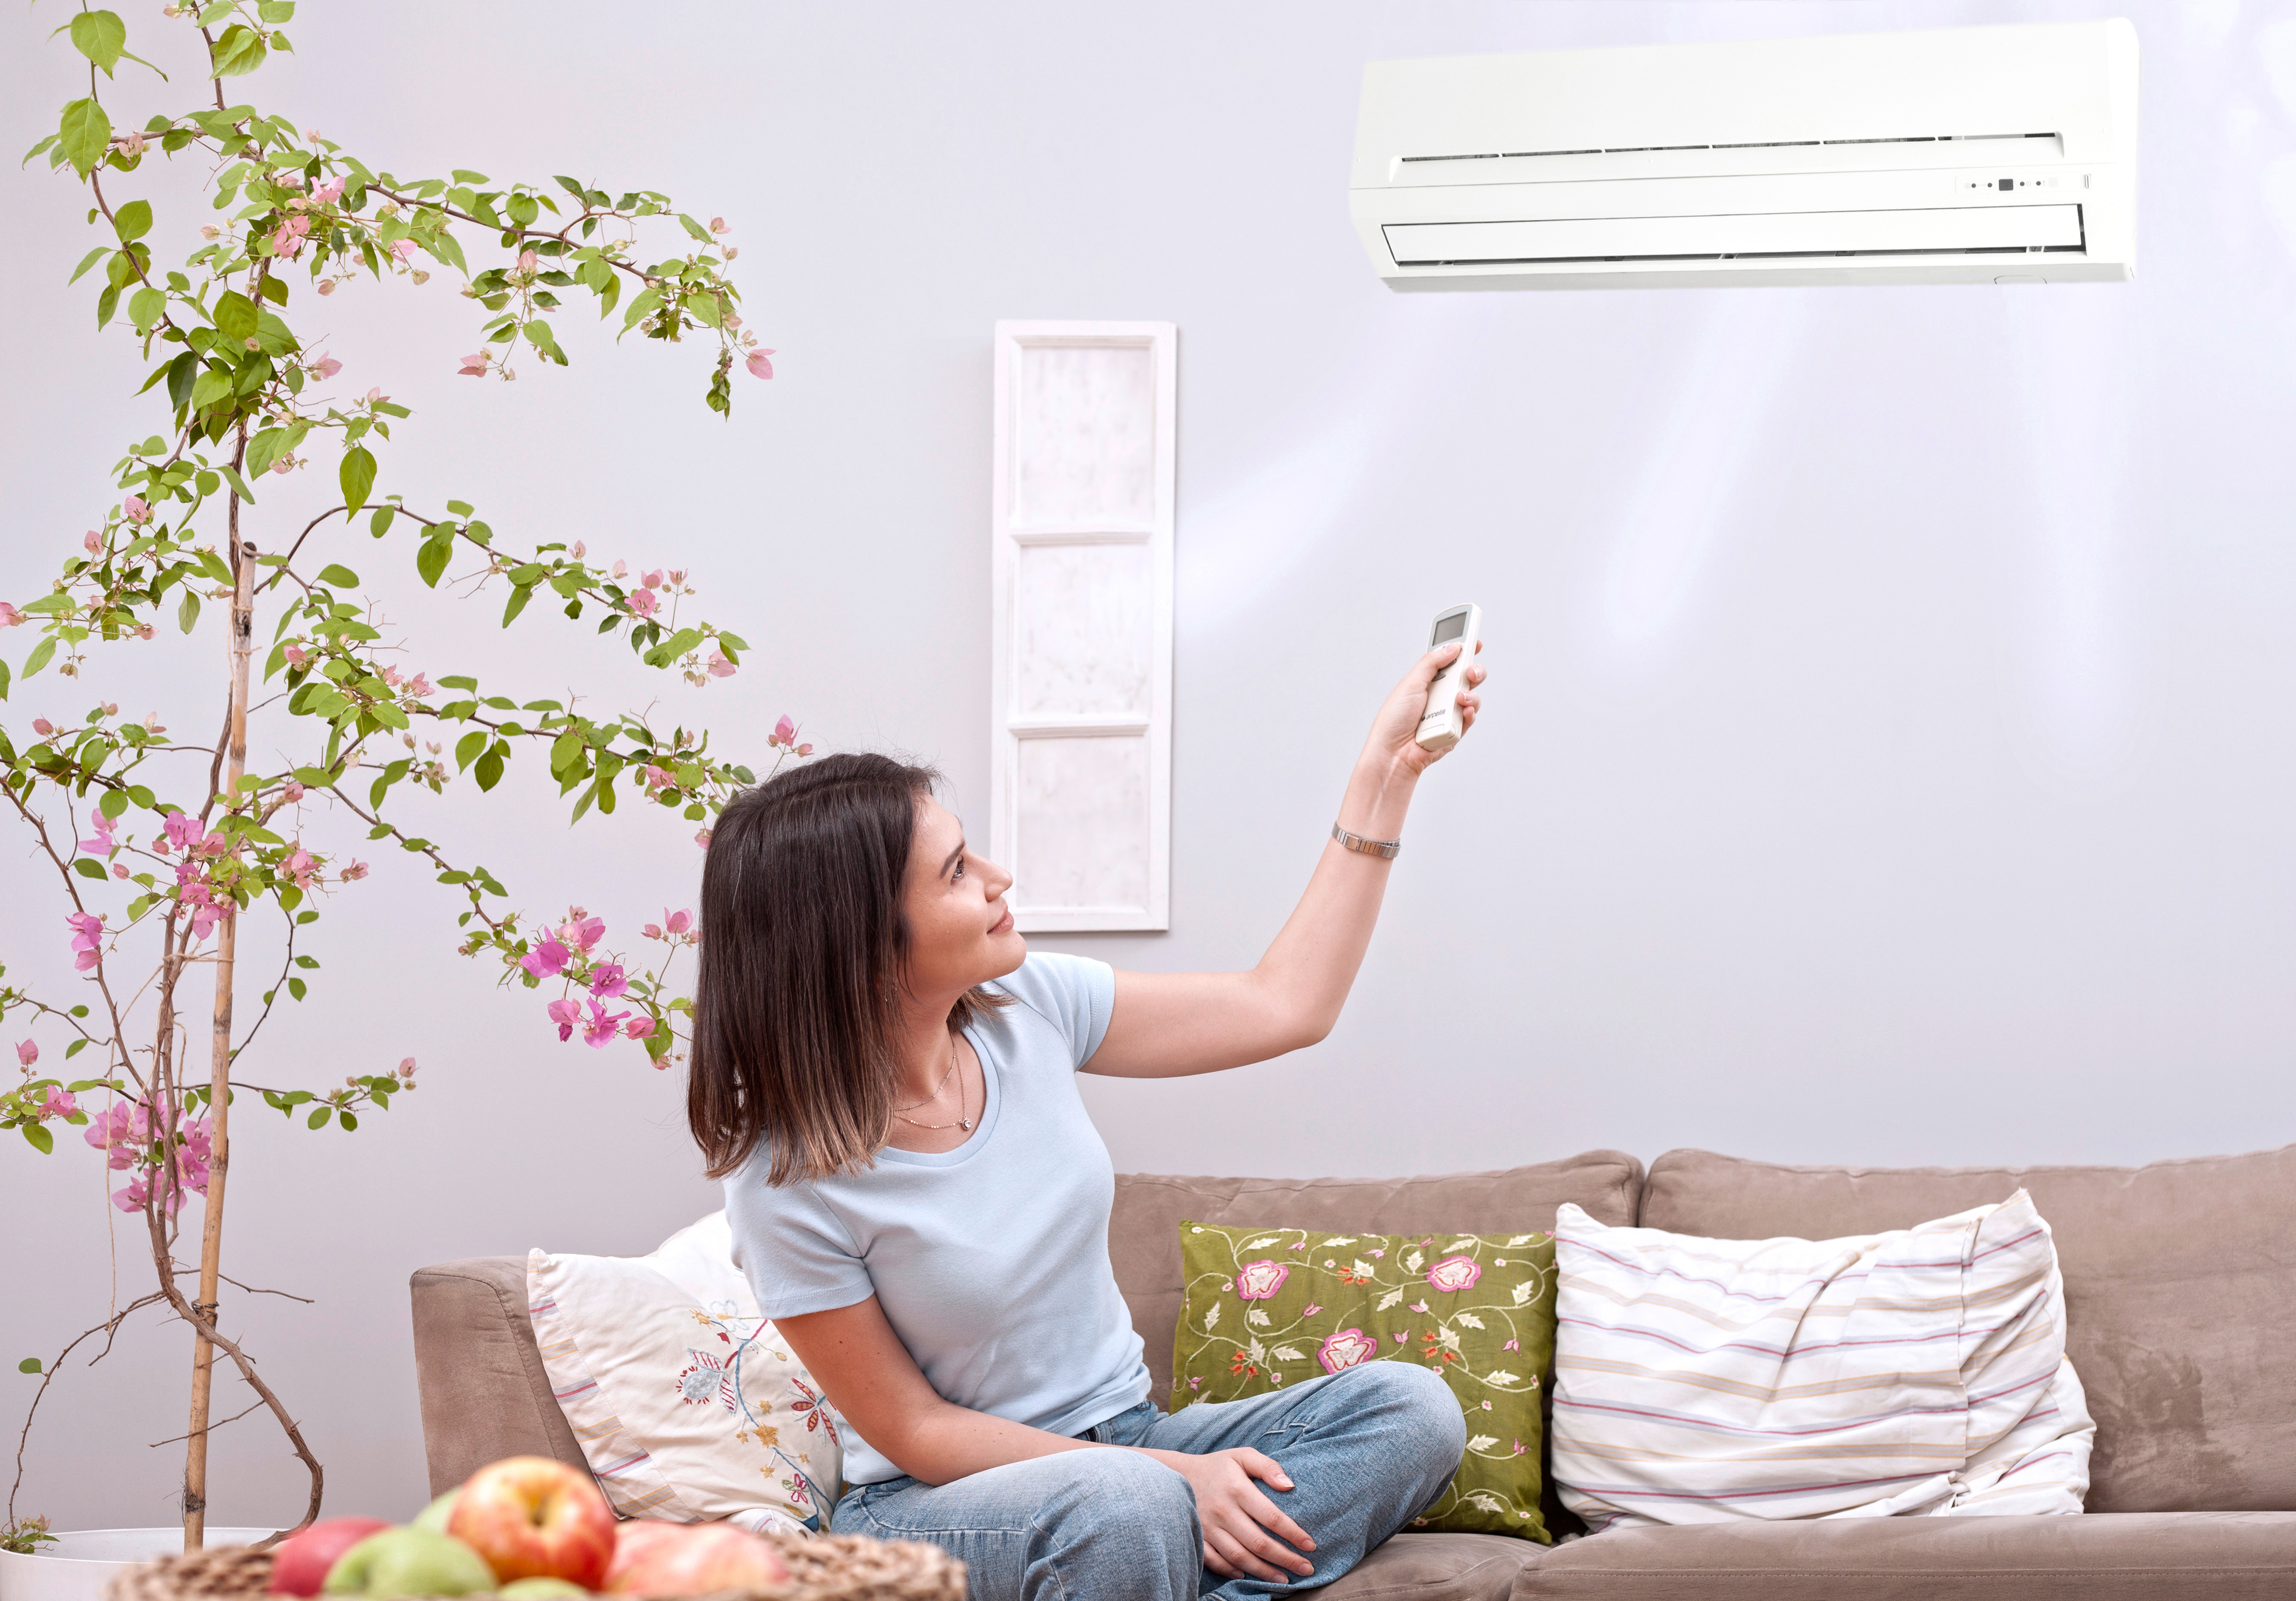 La climatisation réversible assure un confort dans nos intérieurs au gré des saisons. © izzetugutmen, Adobe Stock